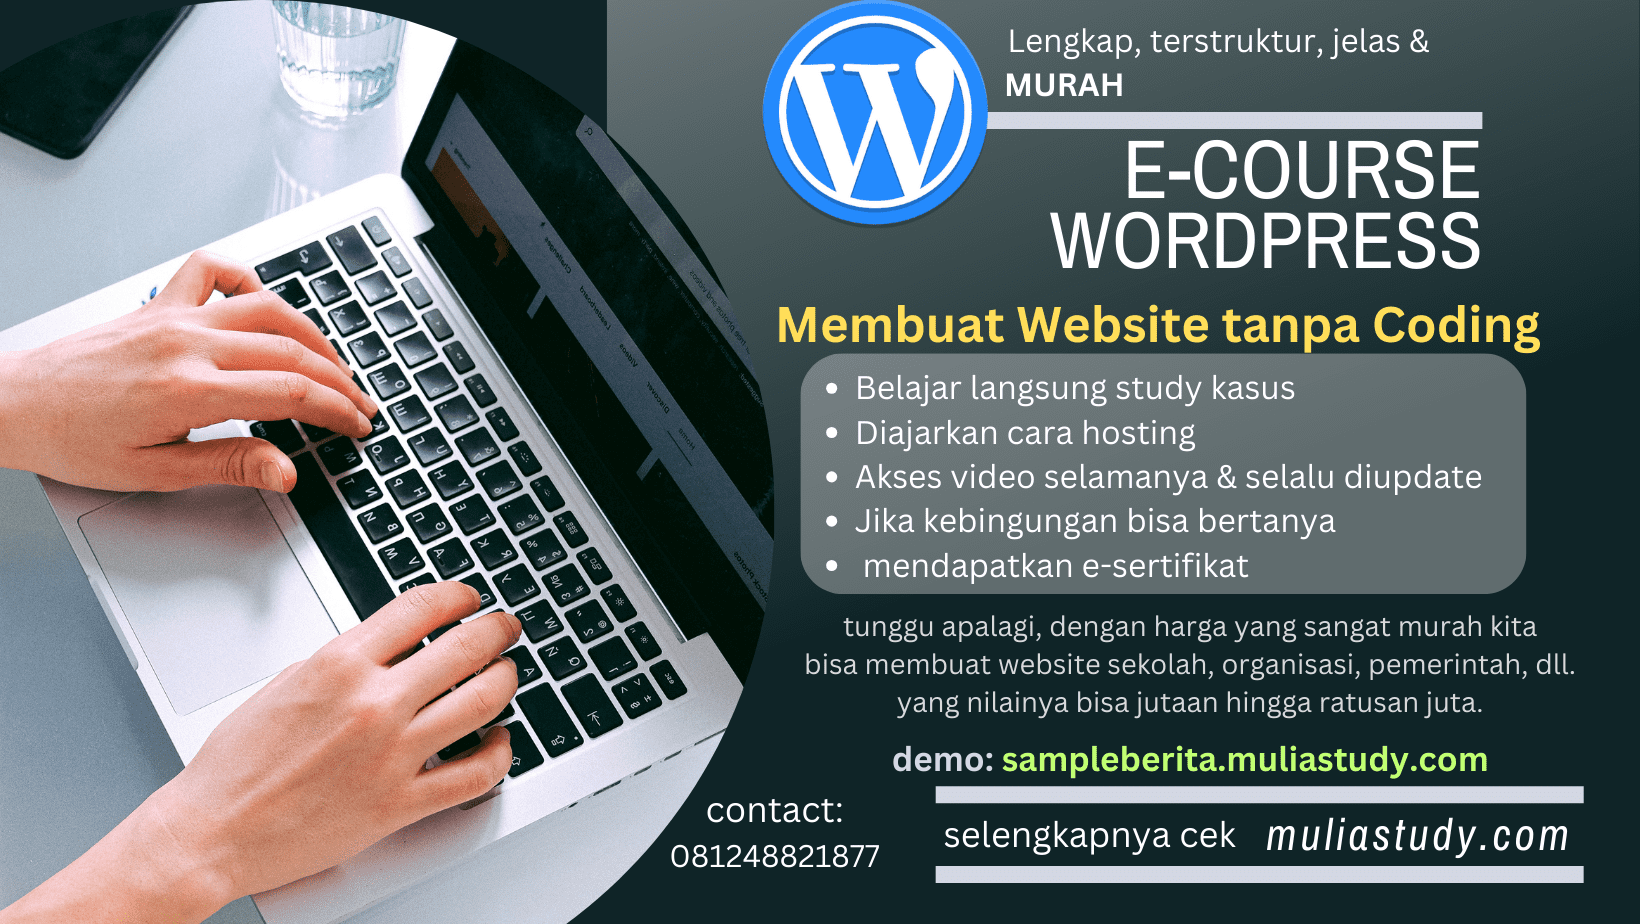 Belajar Membuat Website dengan Wordpress